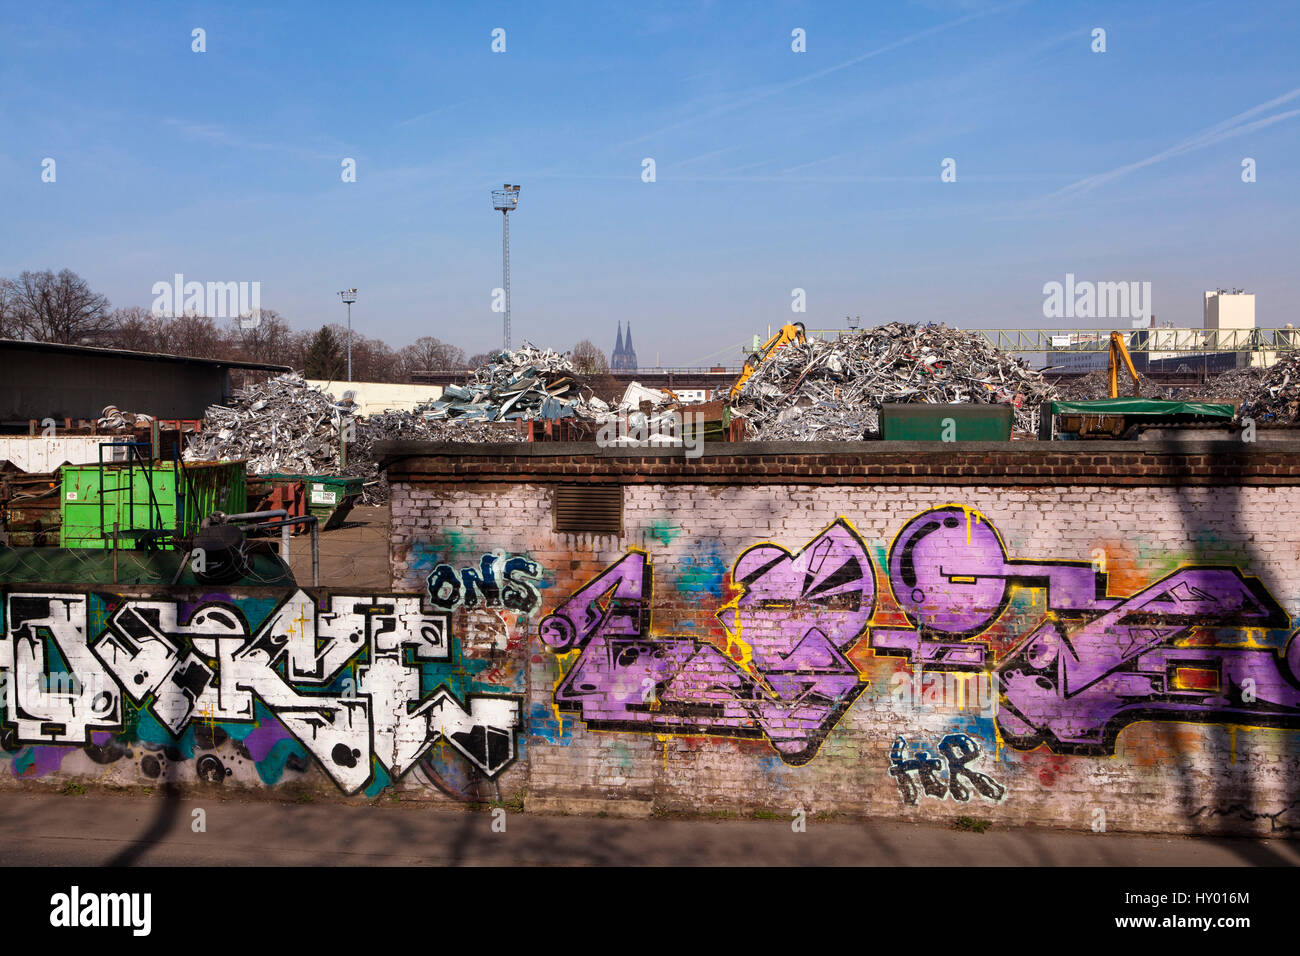 Germania, Colonia, rottami di cantiere con il vecchio metallo nel quartiere Deutz, sullo sfondo la cattedrale, a parete con graffiti. Foto Stock